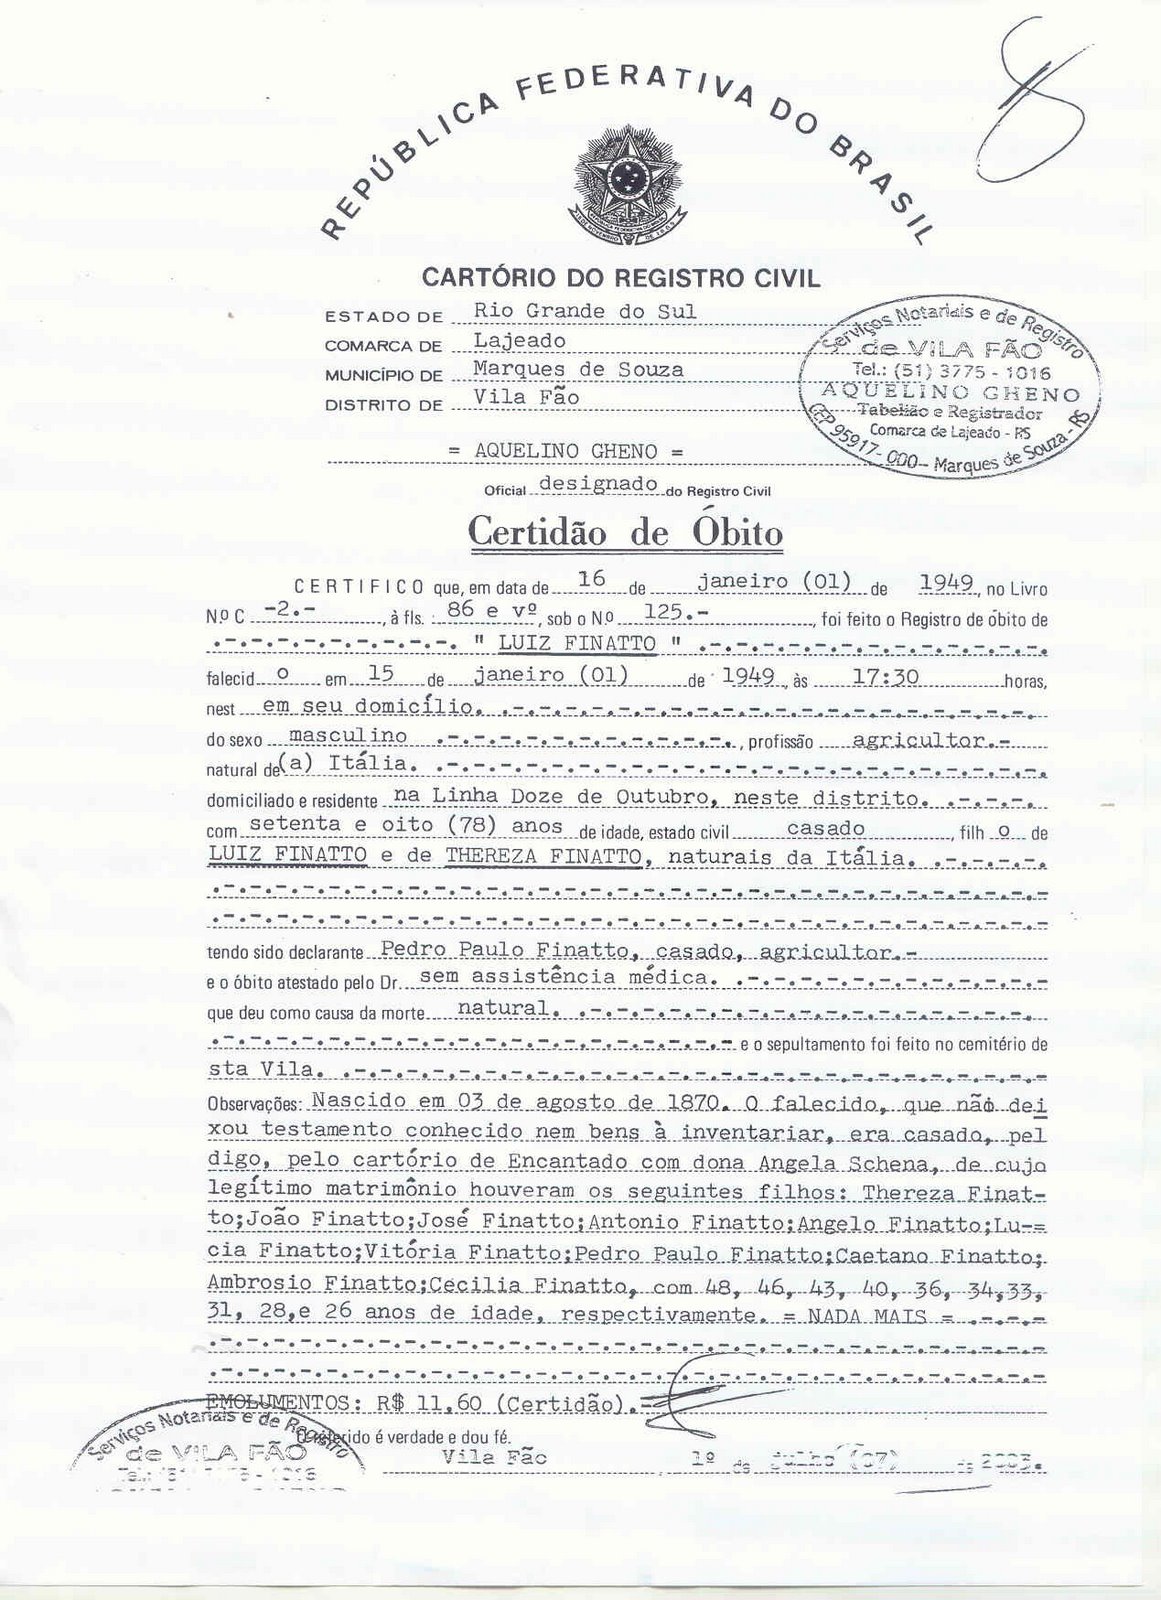 CERTIDÃO DE CASAMENTO DE LUIGI FINATO